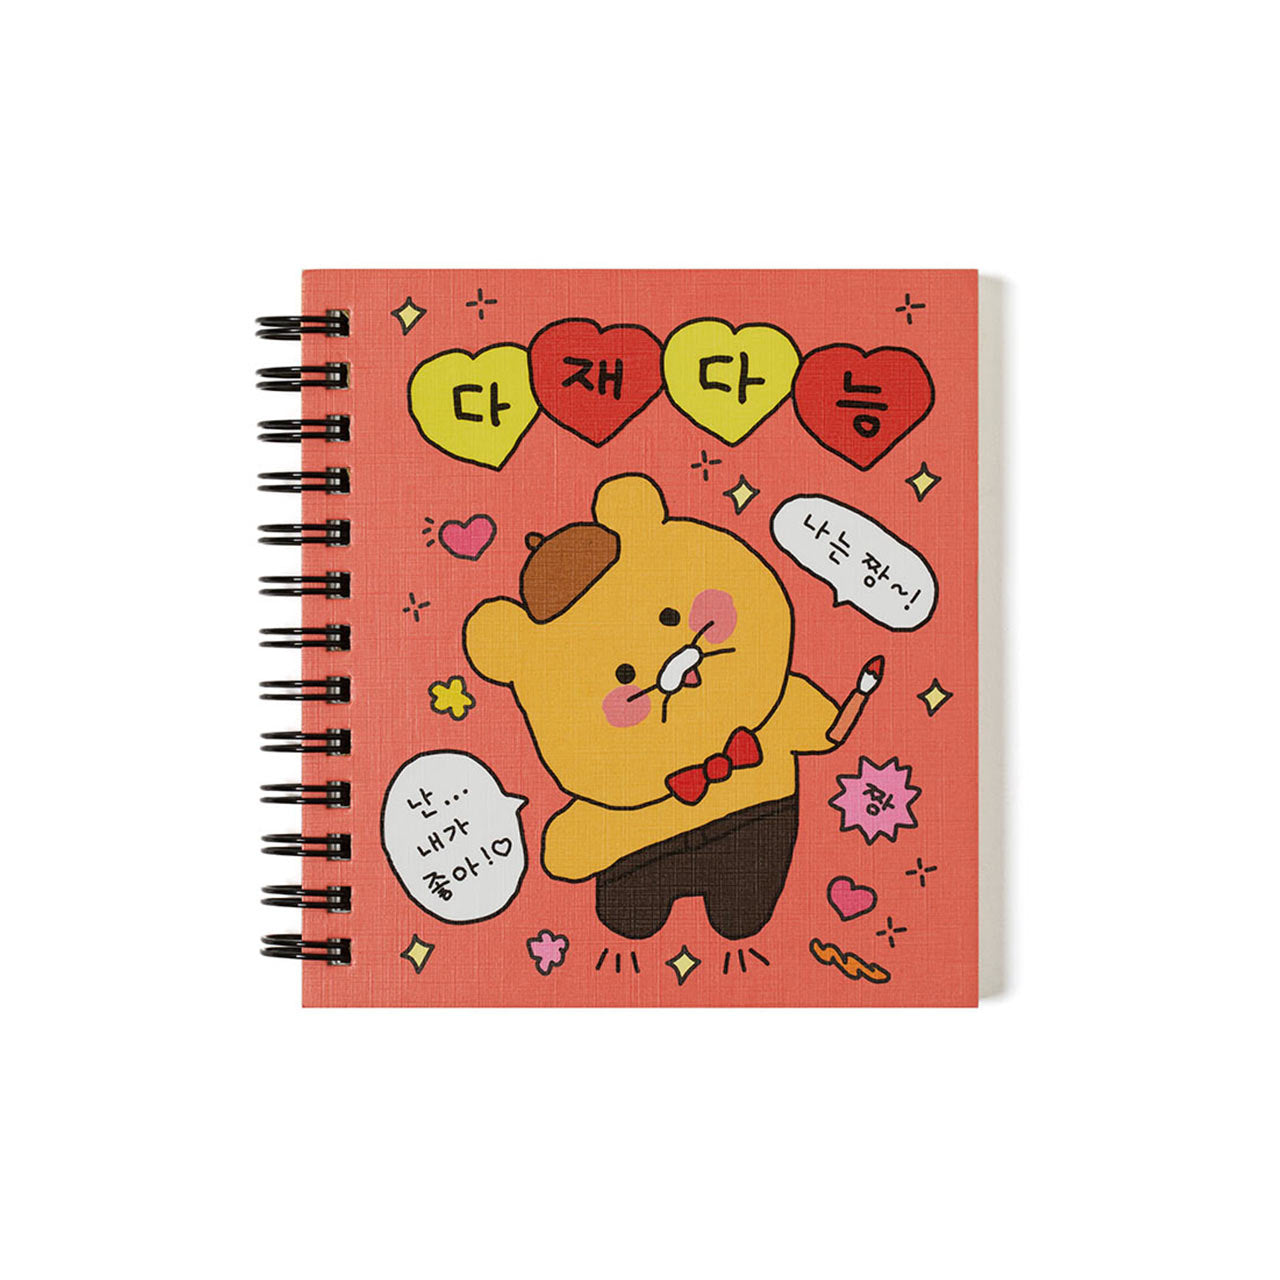 Choonsik Mini Notebook